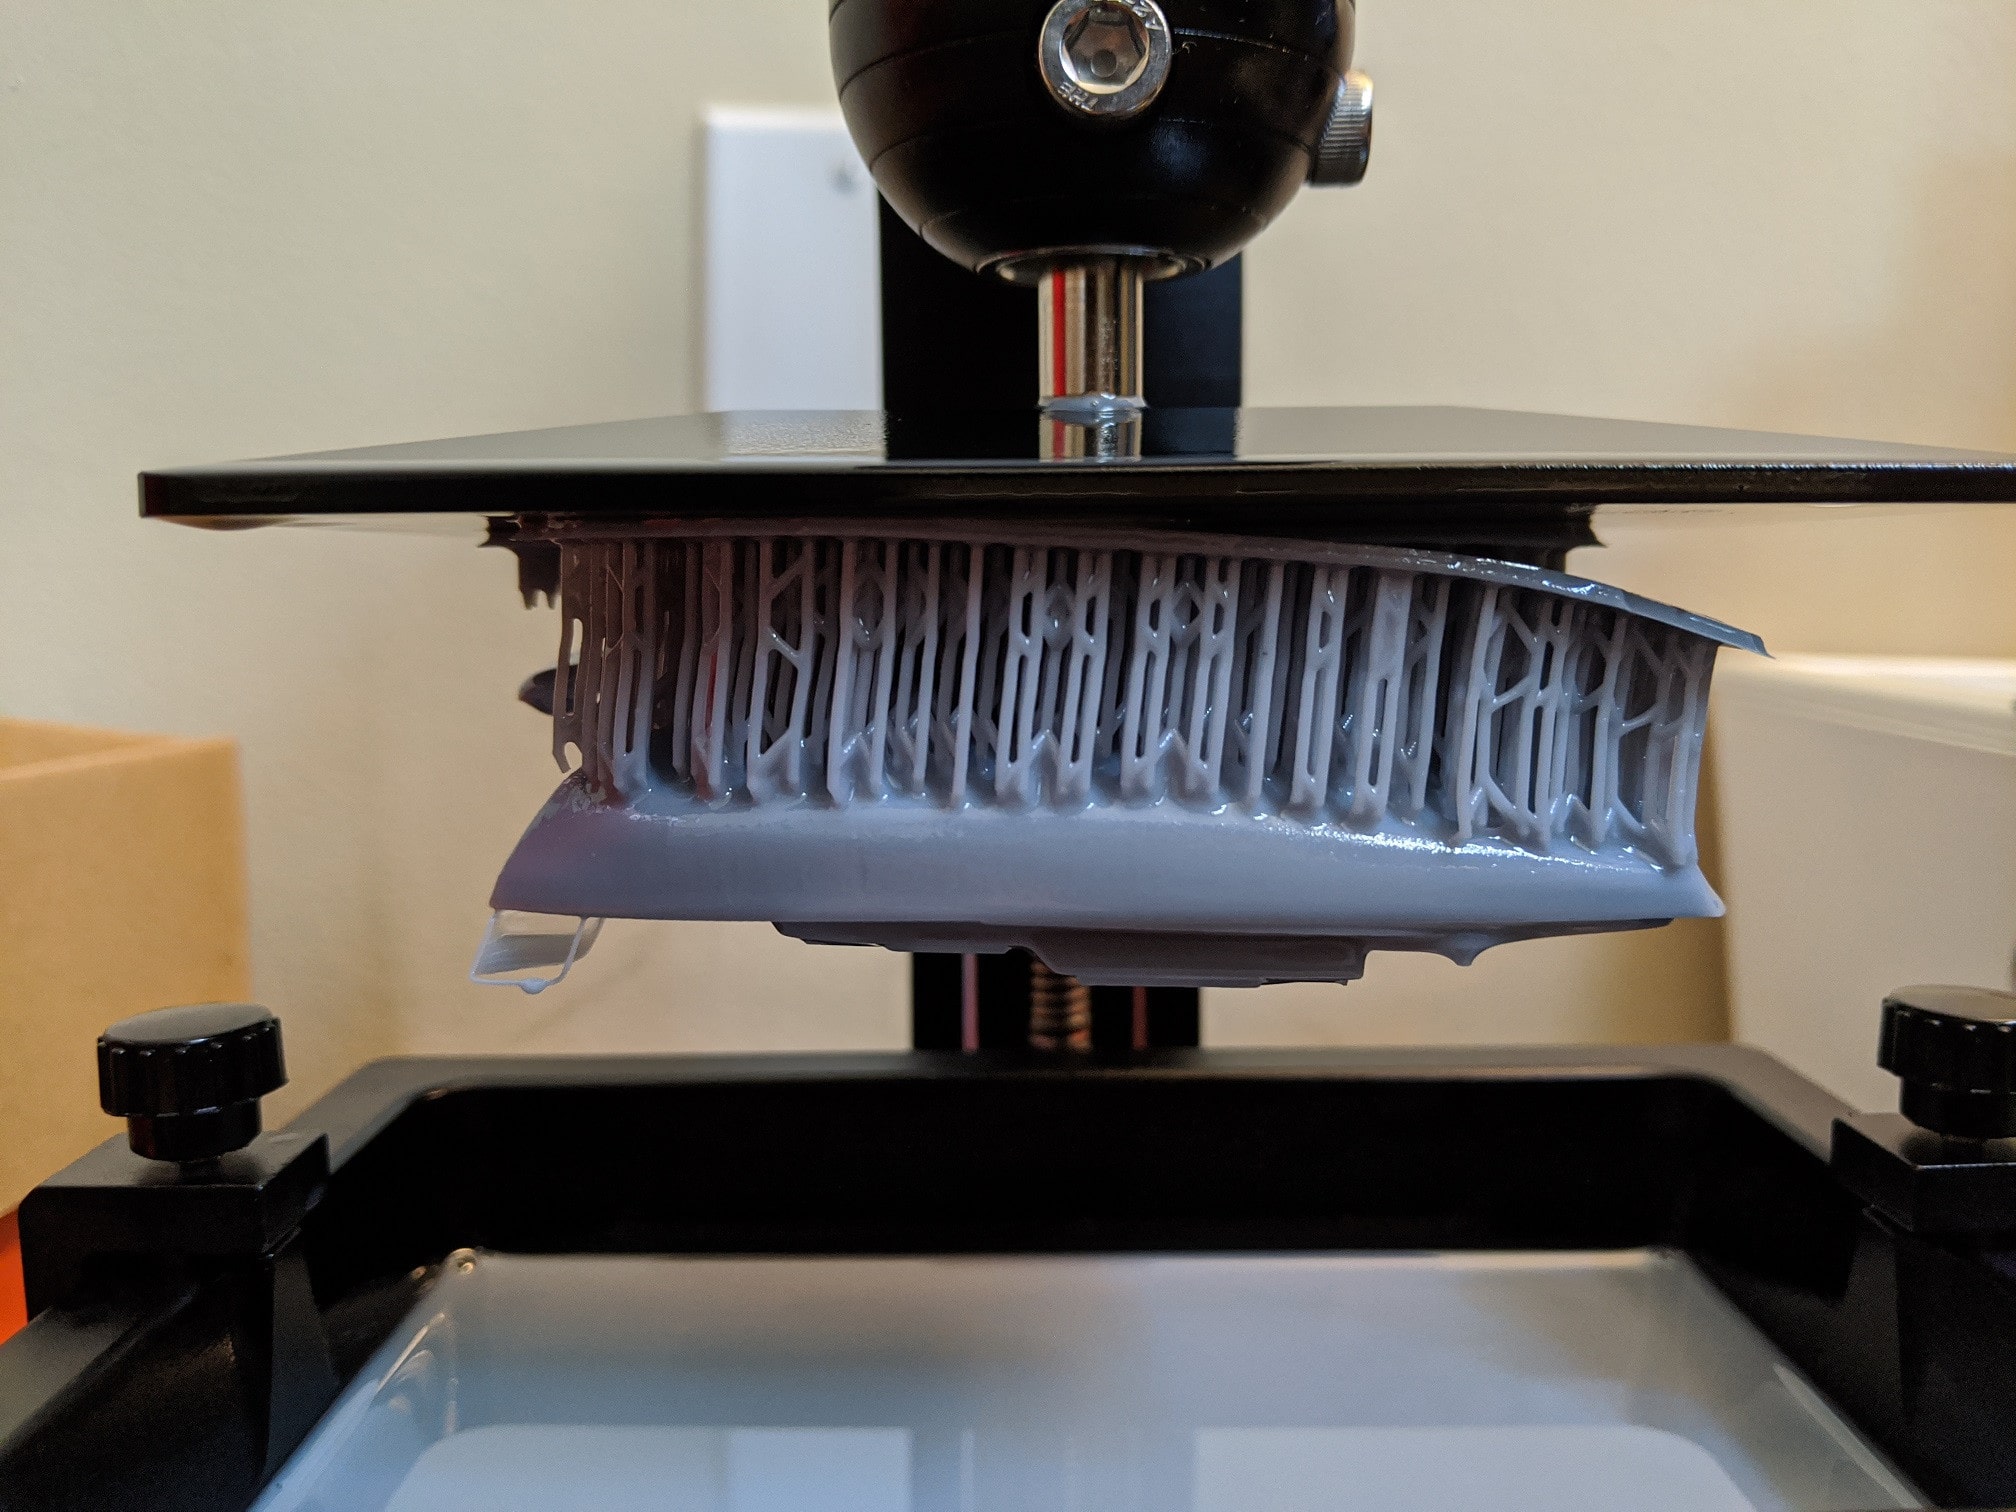 Stampa 3D: come scelgo il filamento giusto? - Plastix